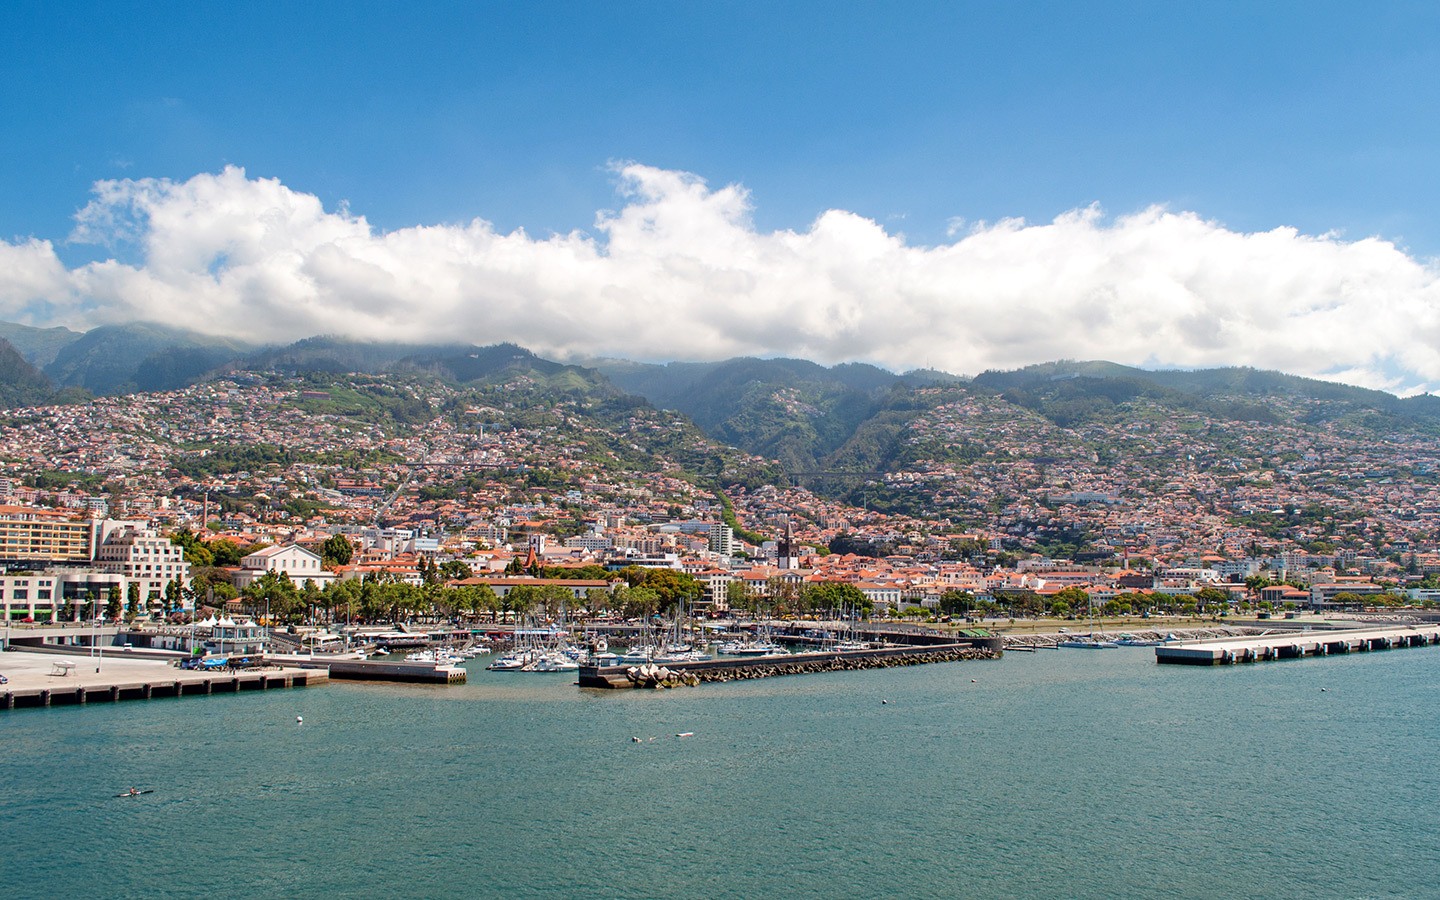 Seiling ut Av Madeira havn på et po cruise